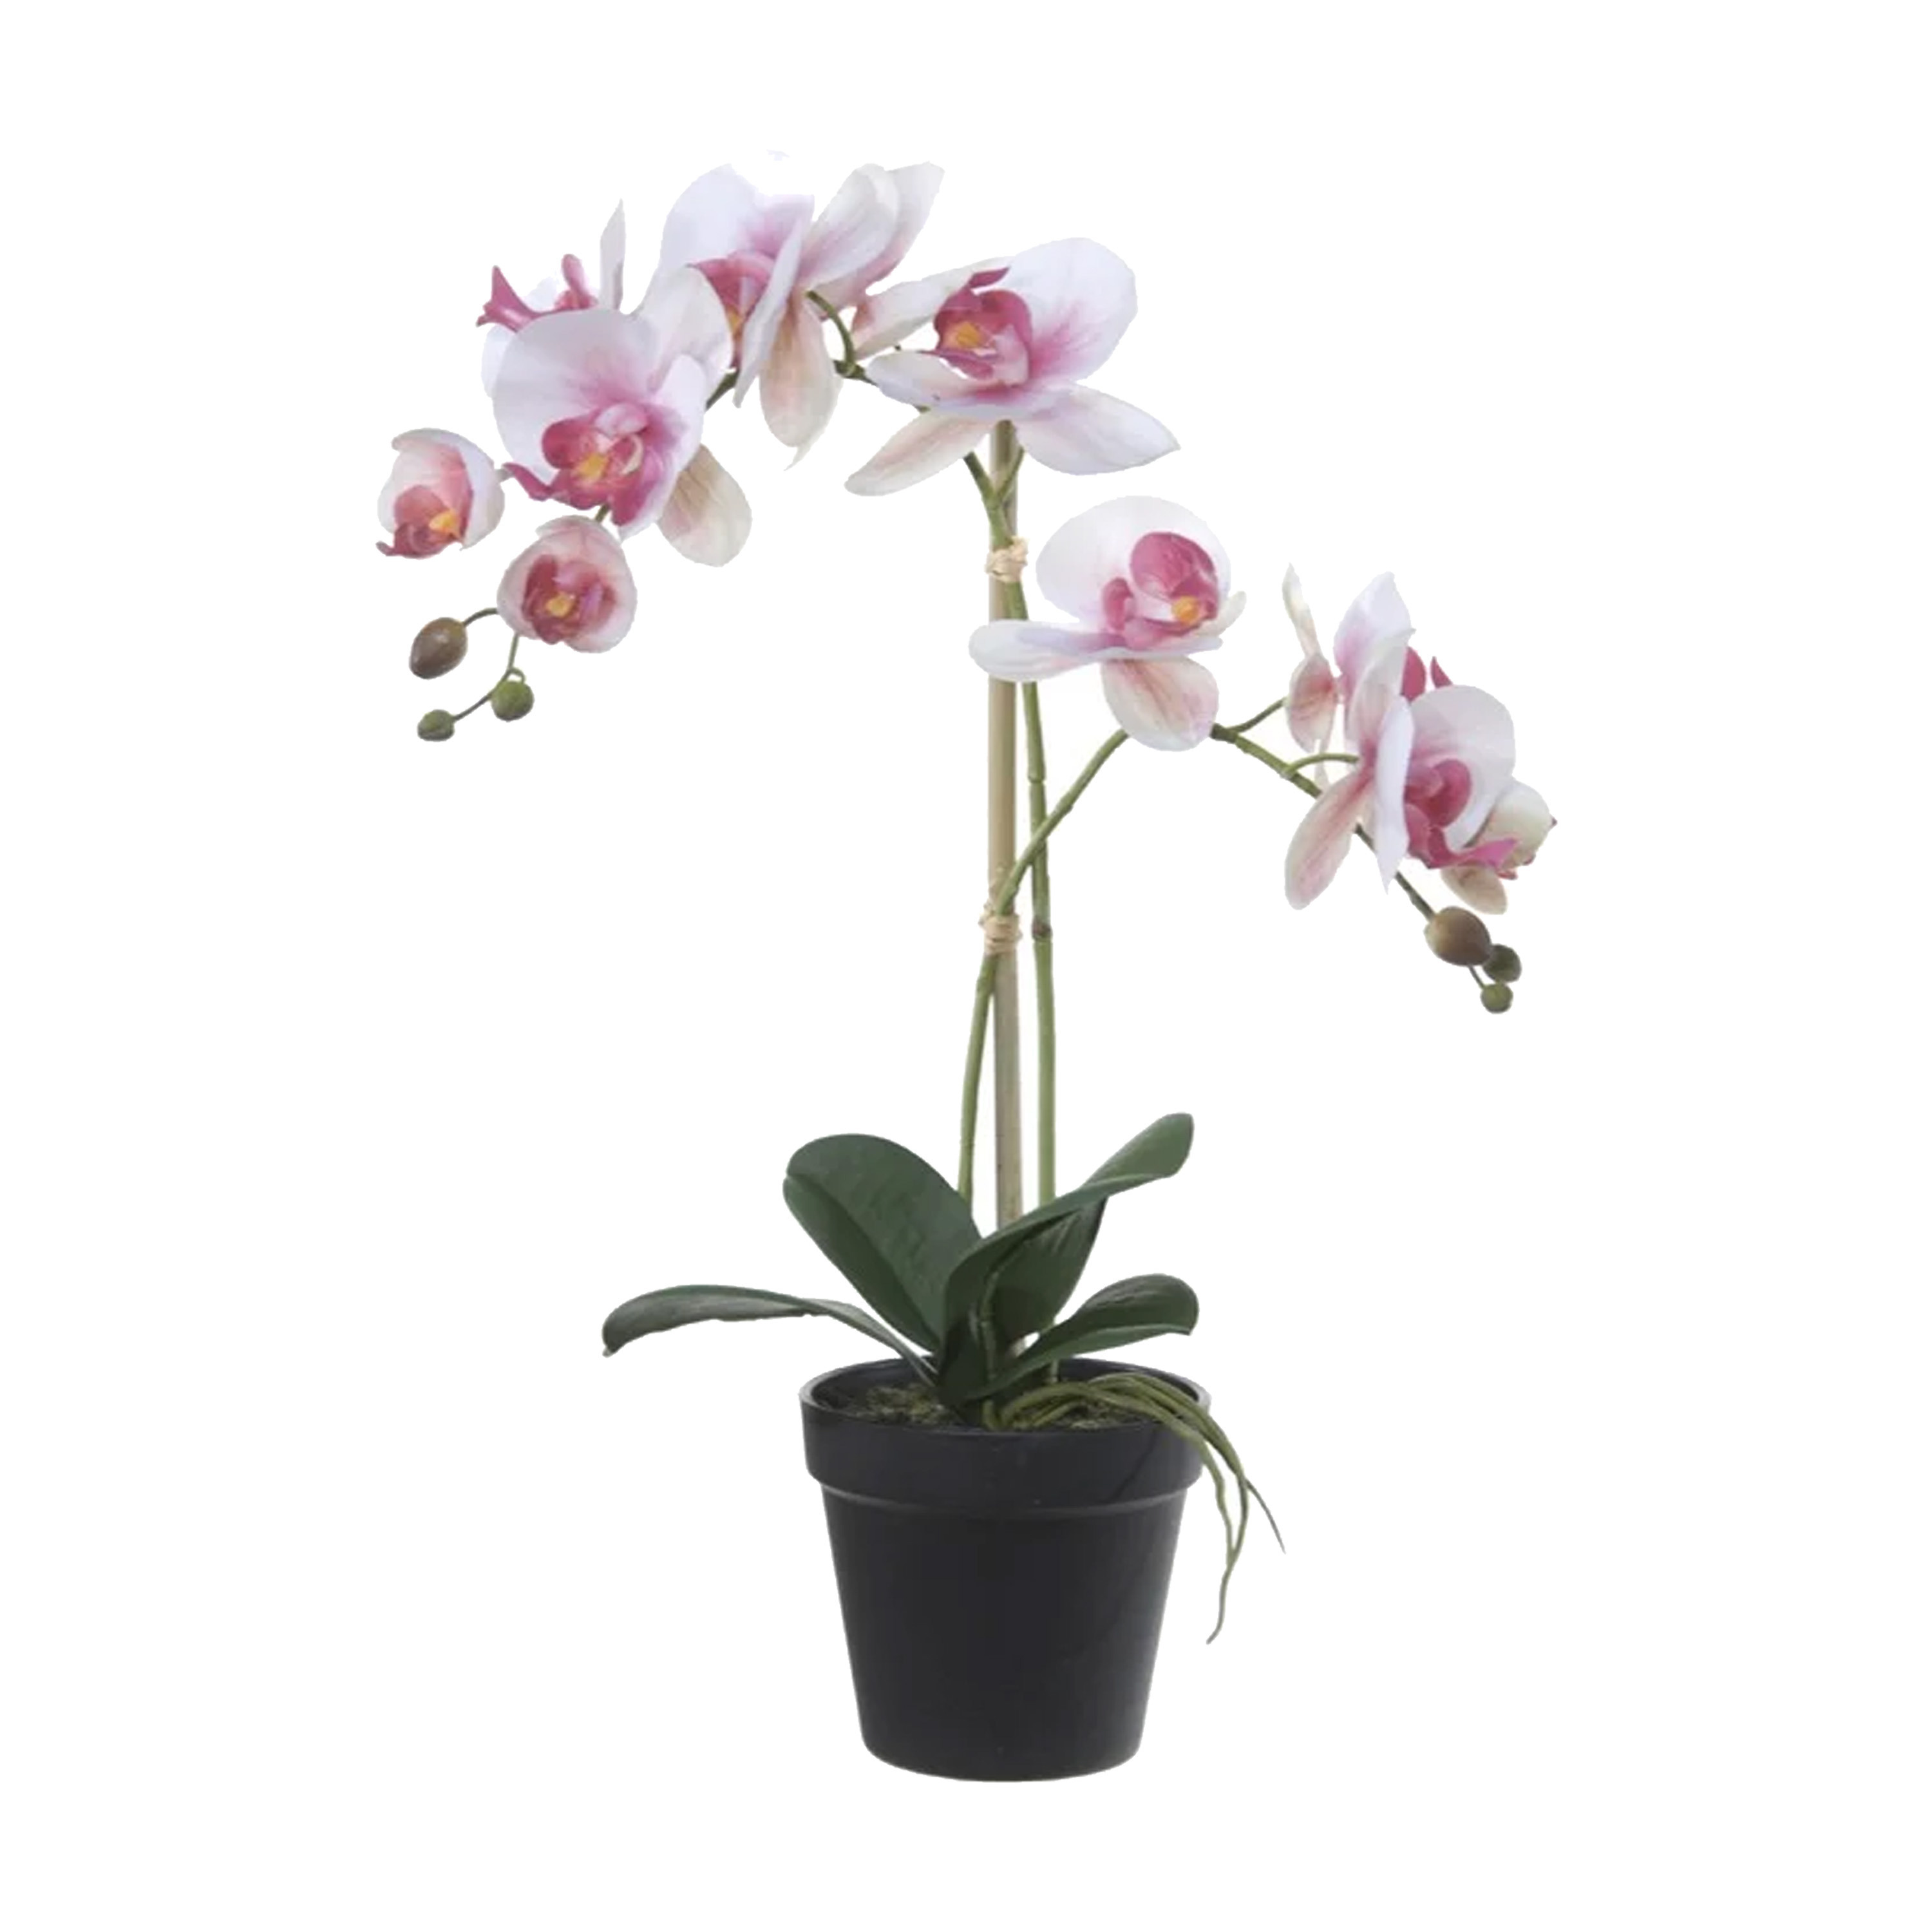 Louis Maes Orchidee bloemen kunstplant in pot bloemen-bloemetjes wit-roze-groen H52 cm